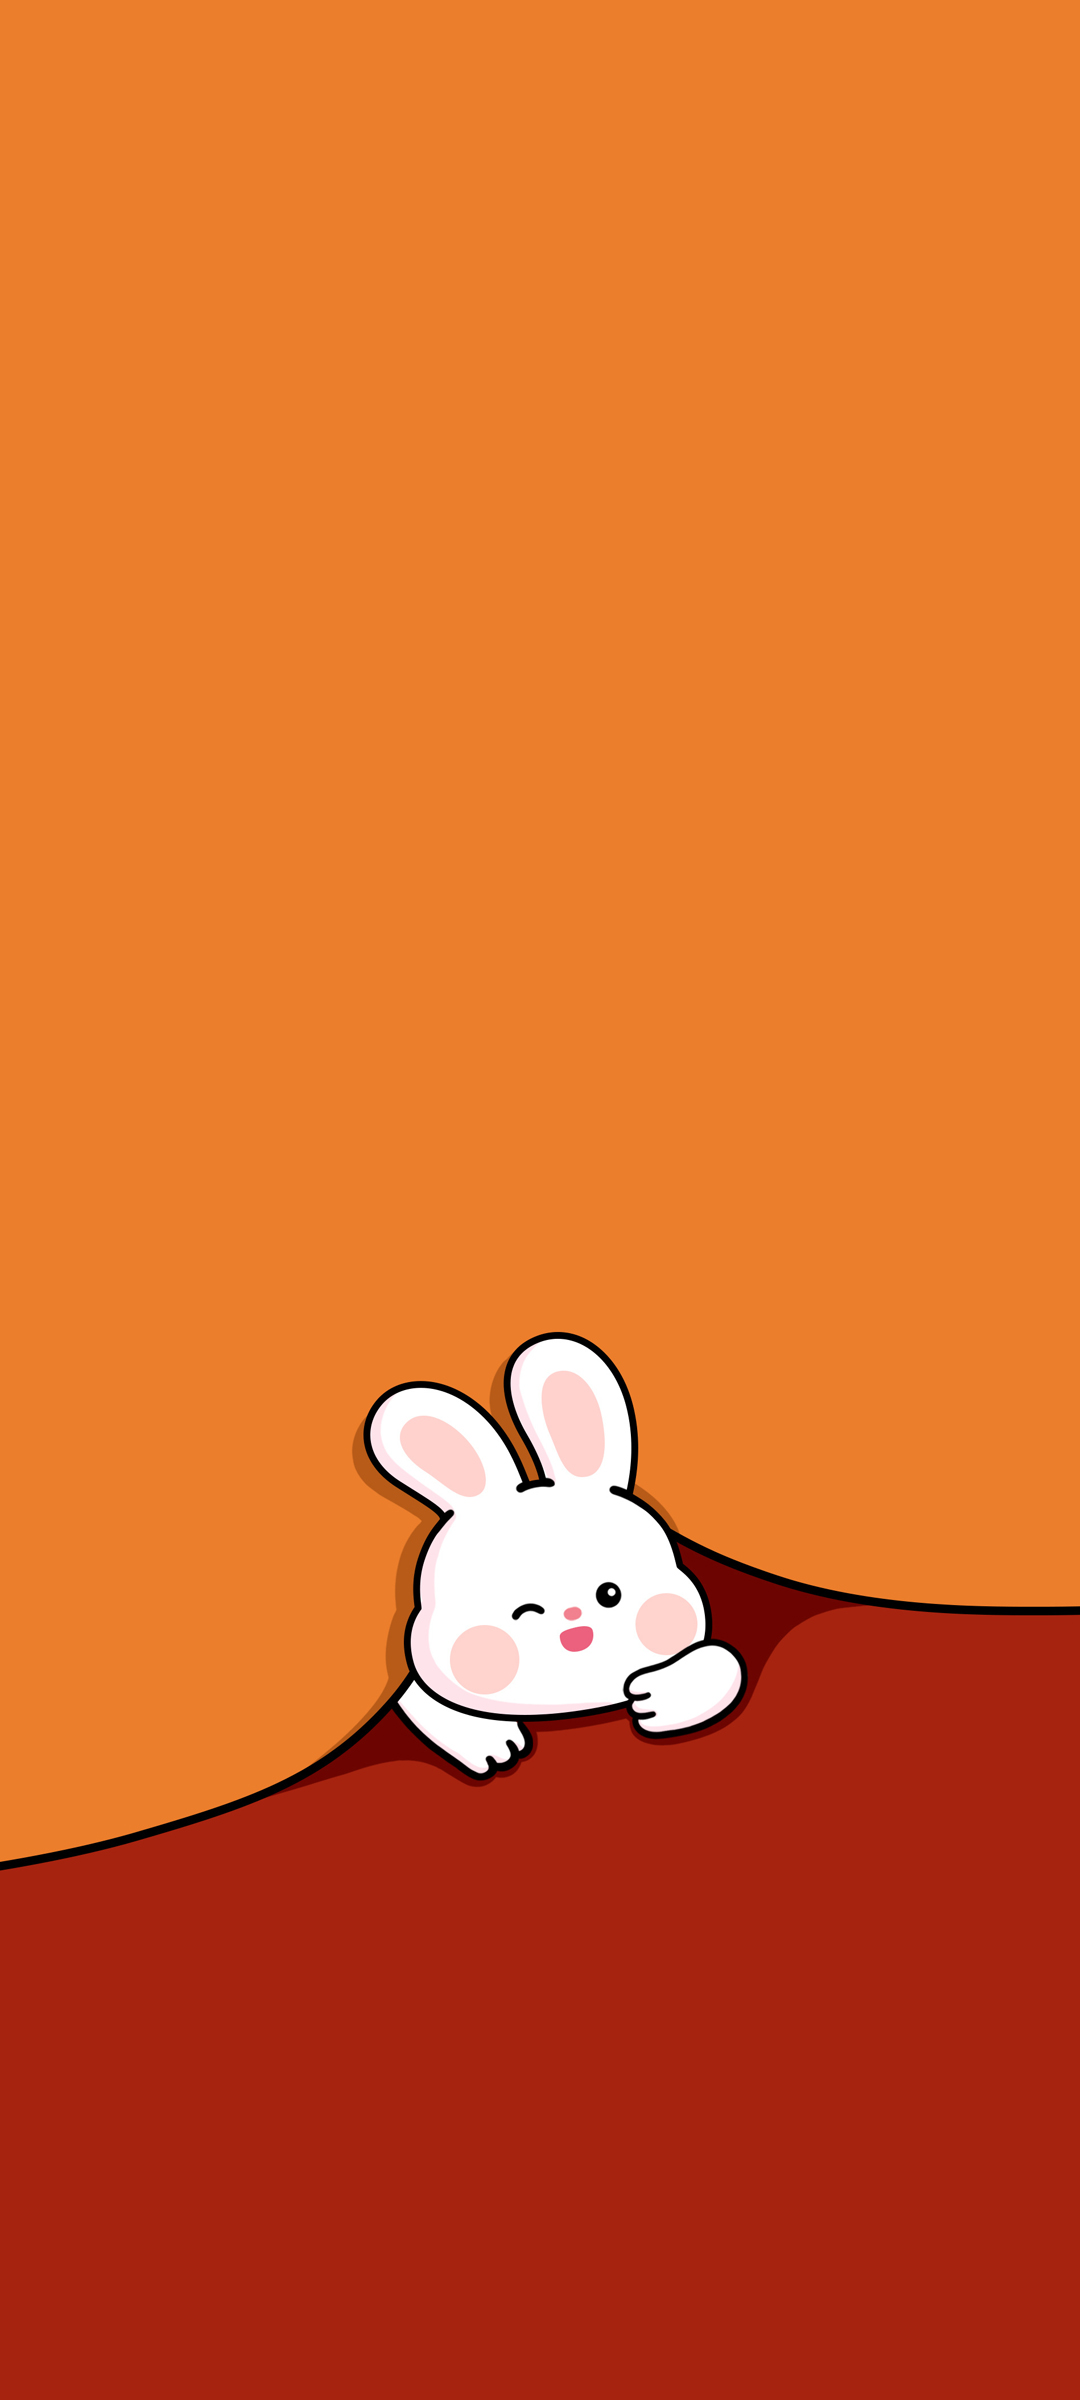 可爱小兔子 卡通 手机 壁纸